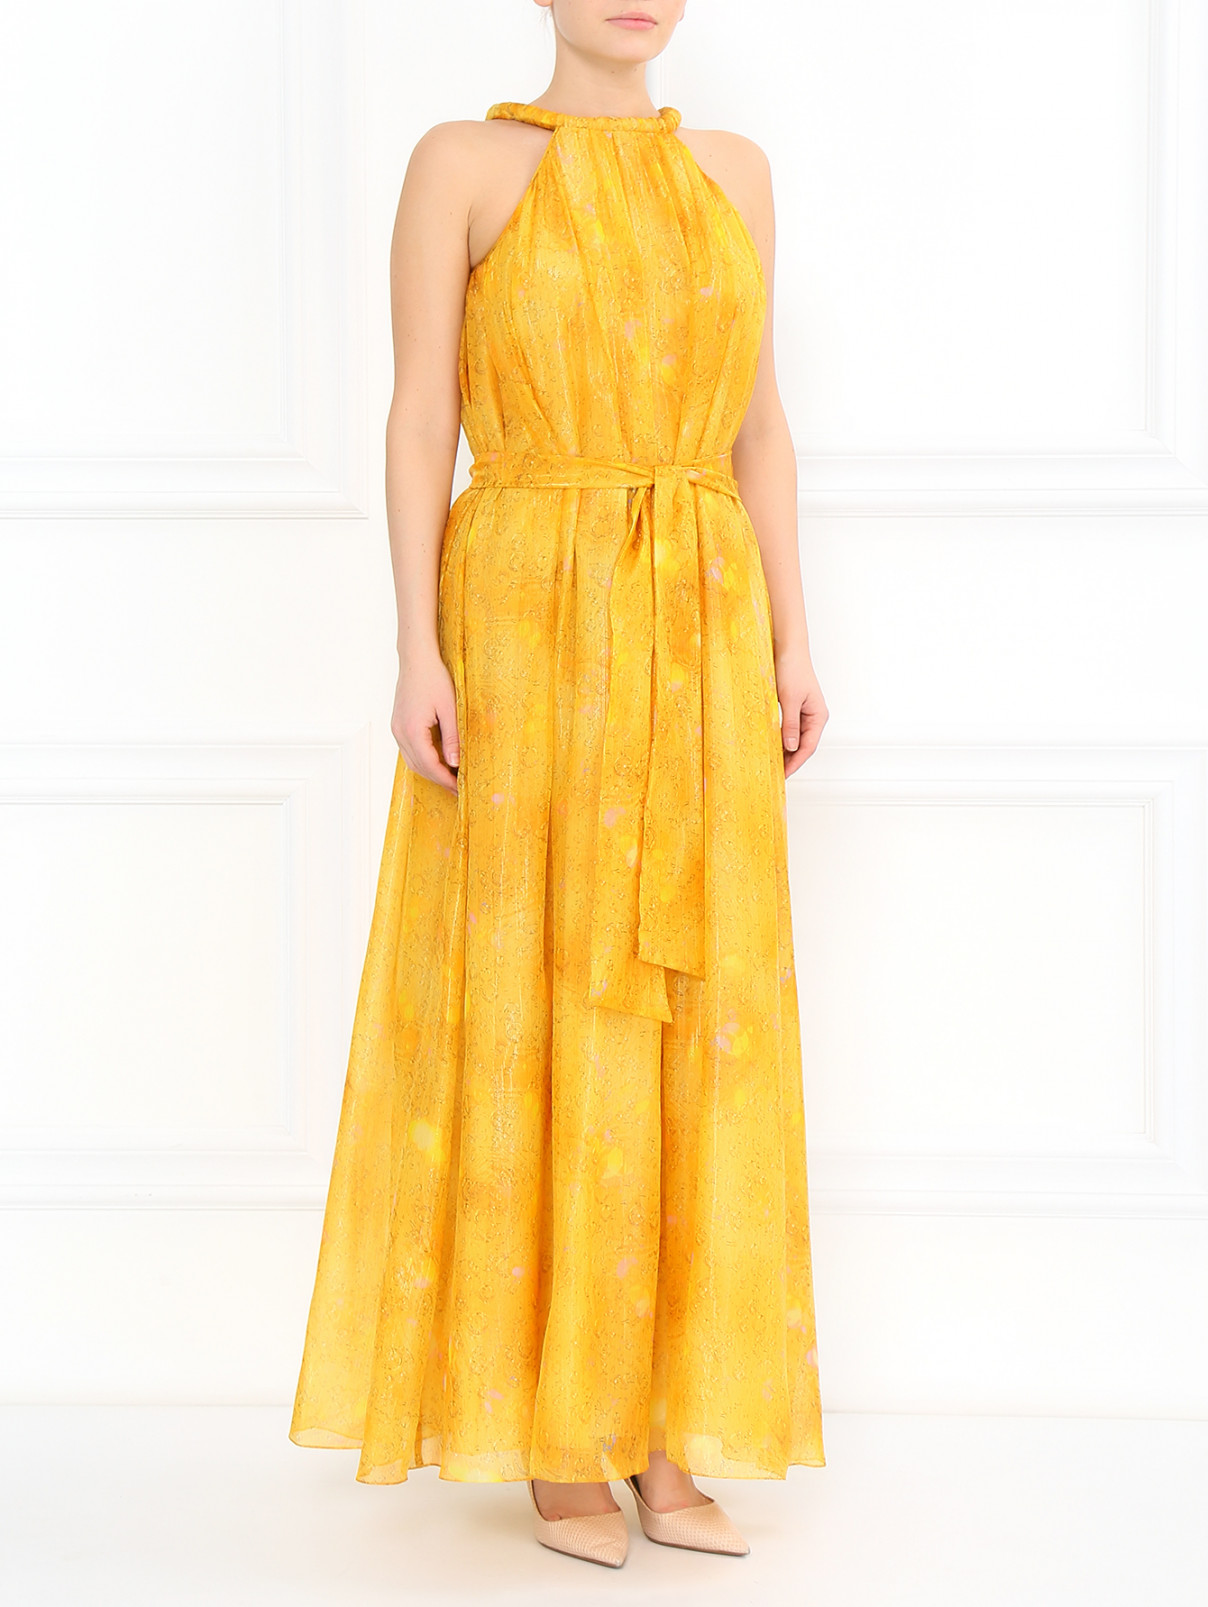 Платье-сарафан из шелка A La Russe  –  Модель Общий вид  – Цвет:  Желтый